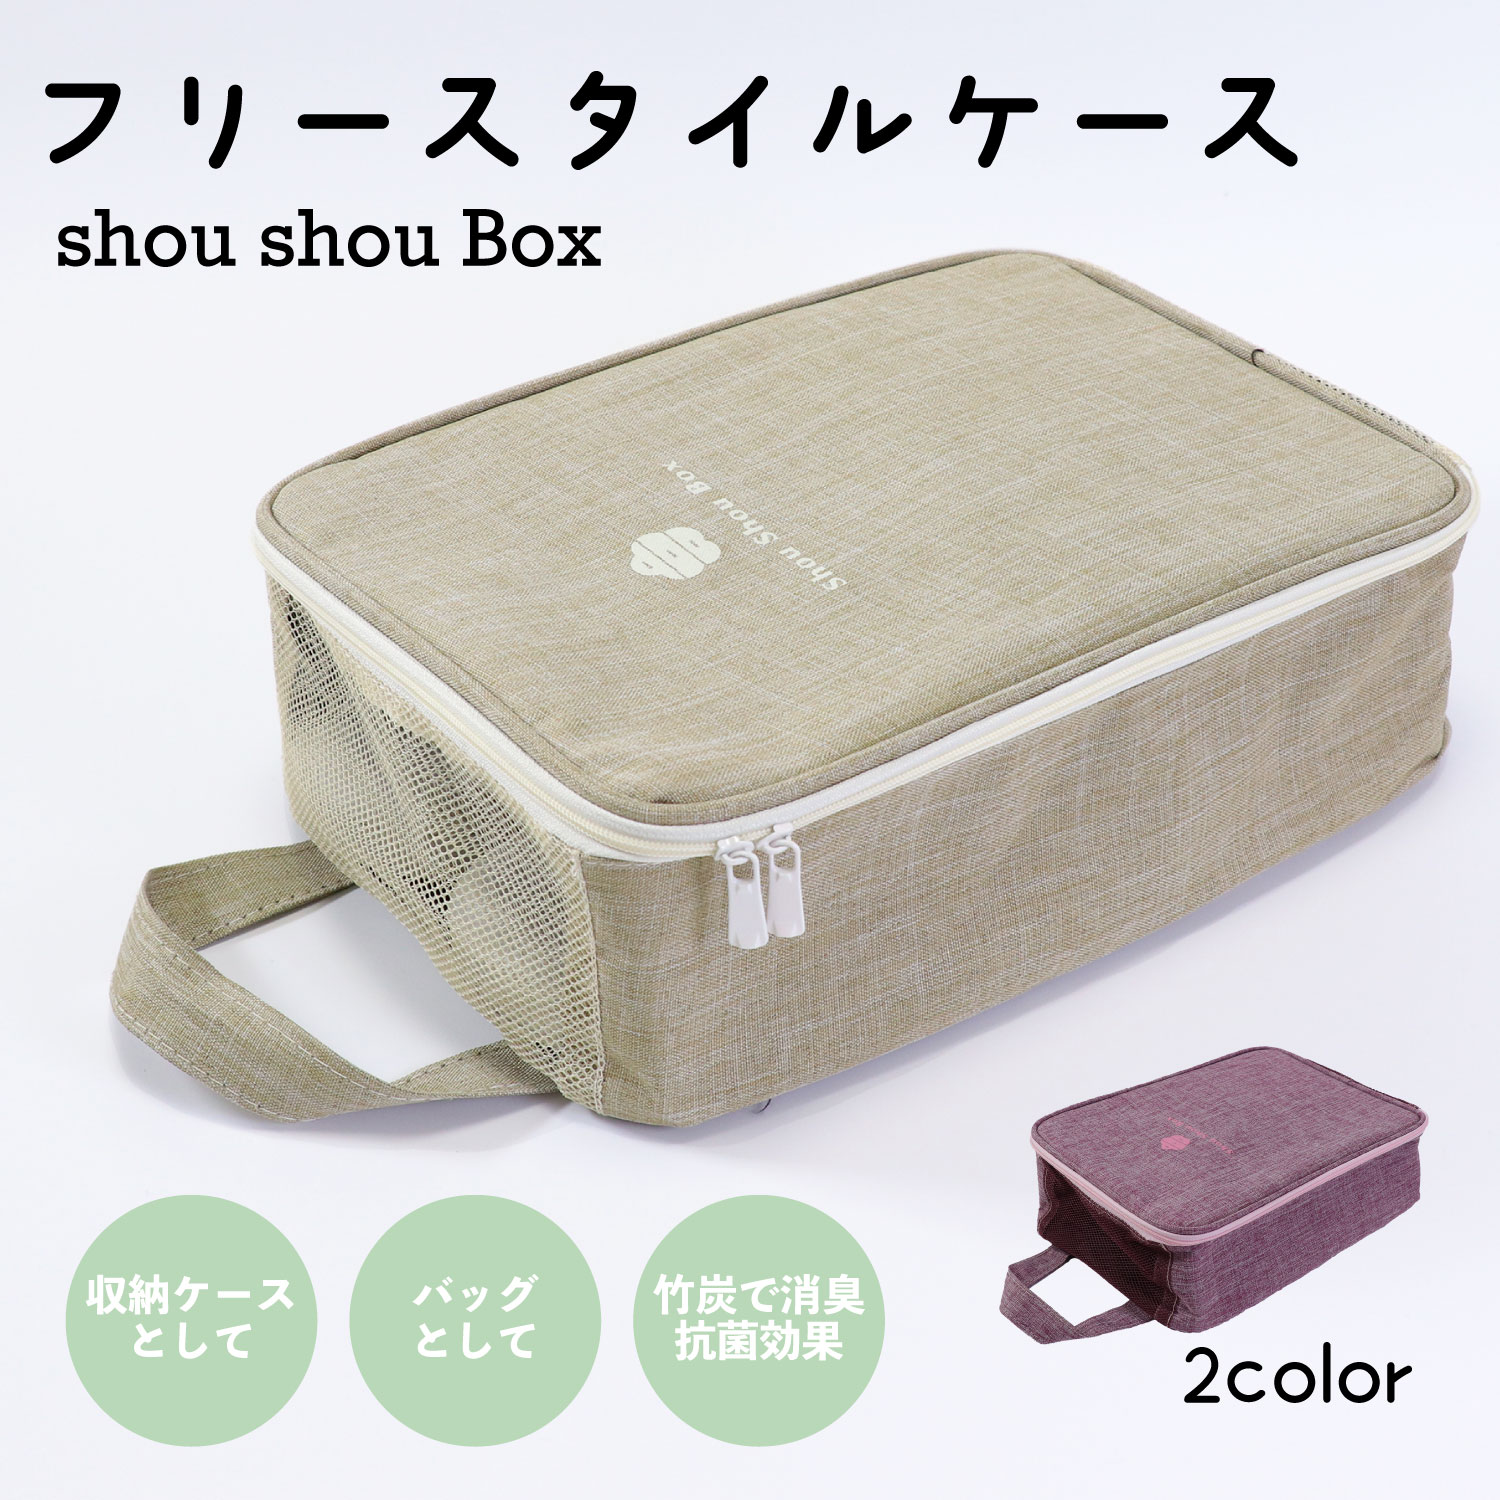 草履のための収納ケース、だけど他にも色々使えちゃうフリースタイルケース『Shou Shou Box』